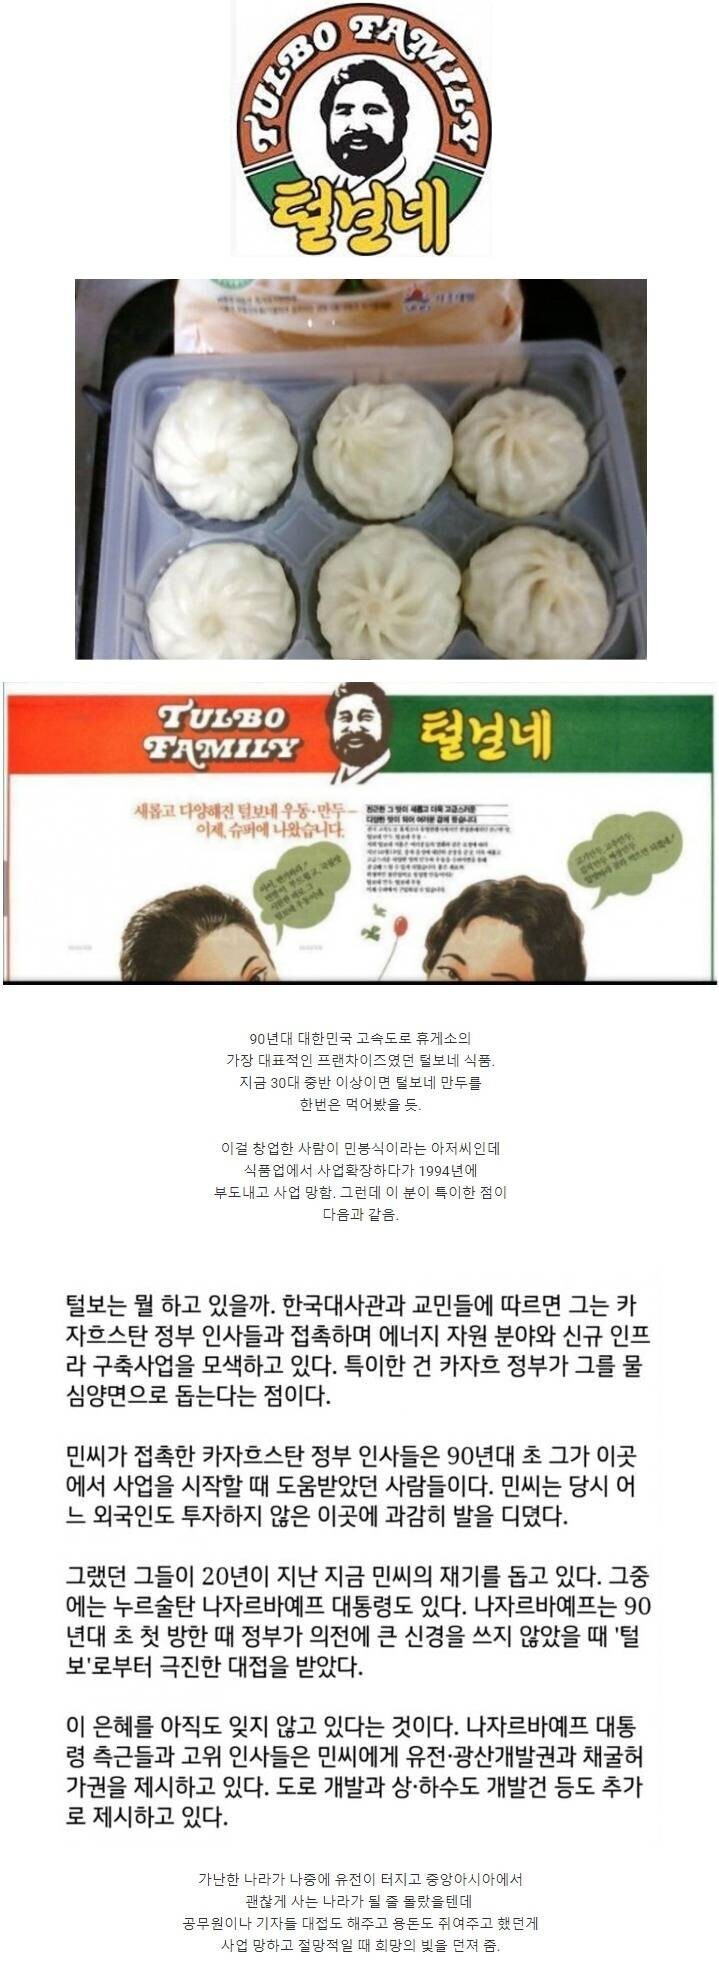 한때 한국에서 가장 많이 팔리던 만두근황. JPG